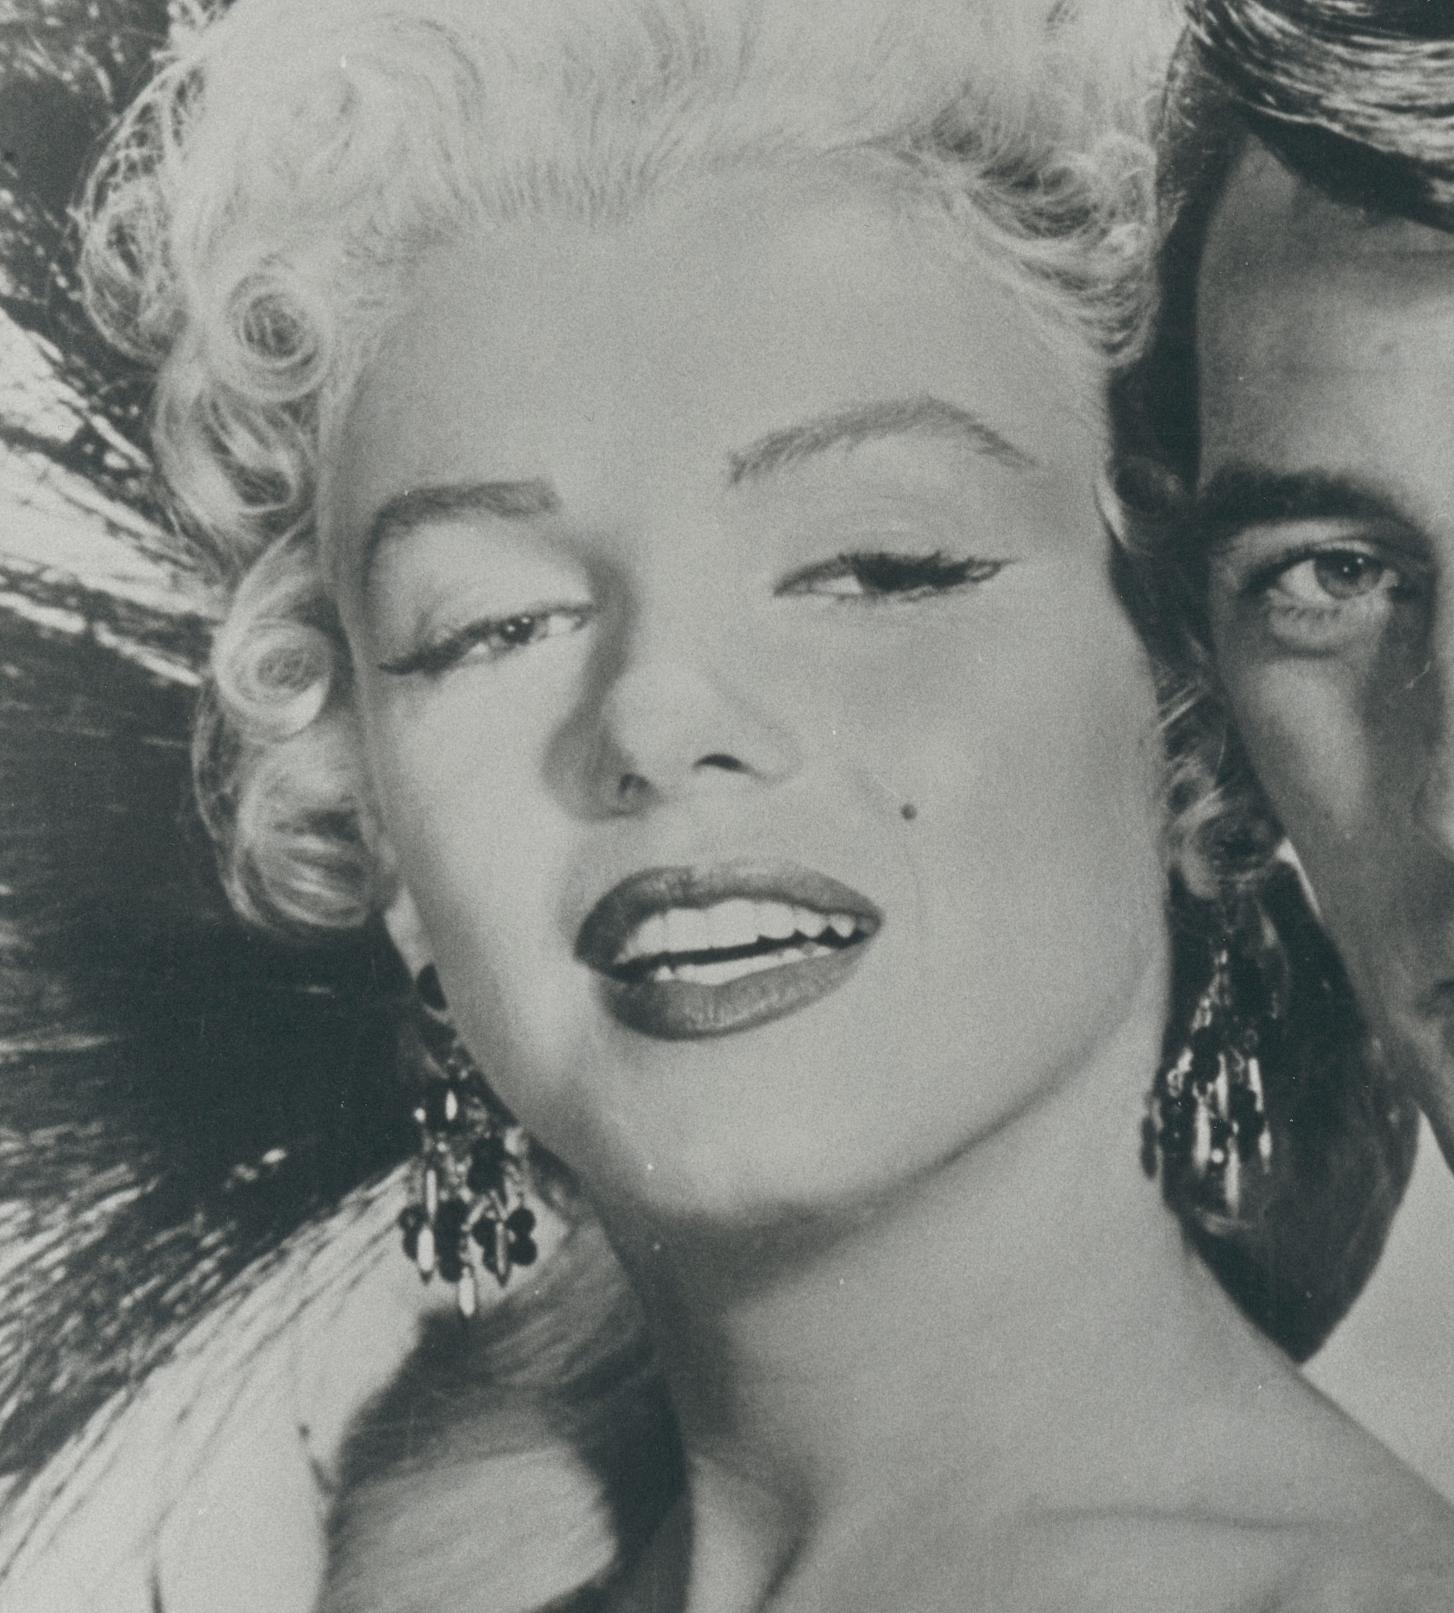 Robert Mitchum und Marilyn Monroe in „River of no Return“ (Rind der Rückkehr), 1954 (Moderne), Photograph, von Unknown